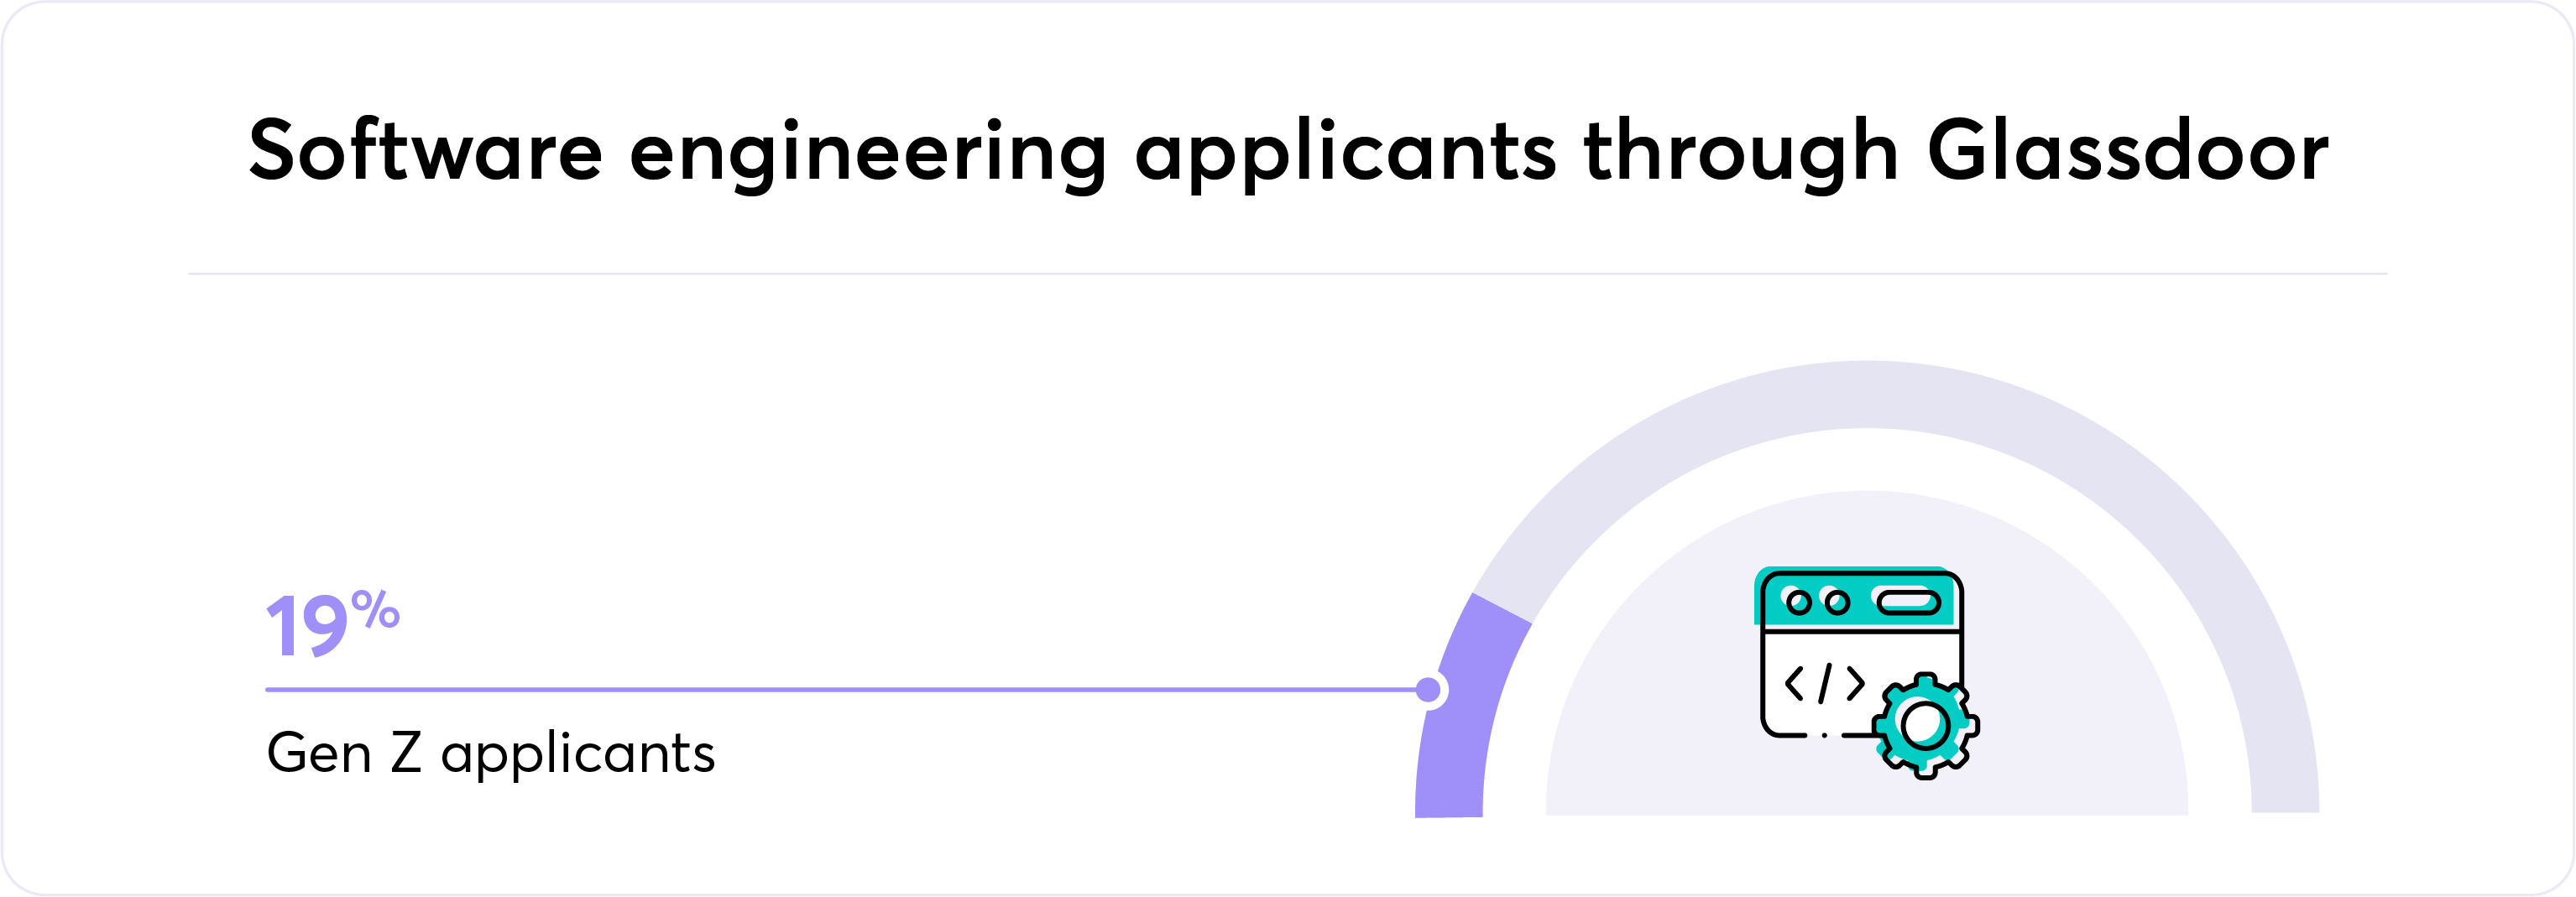 Software engineering applicants through Glassdoor graphic